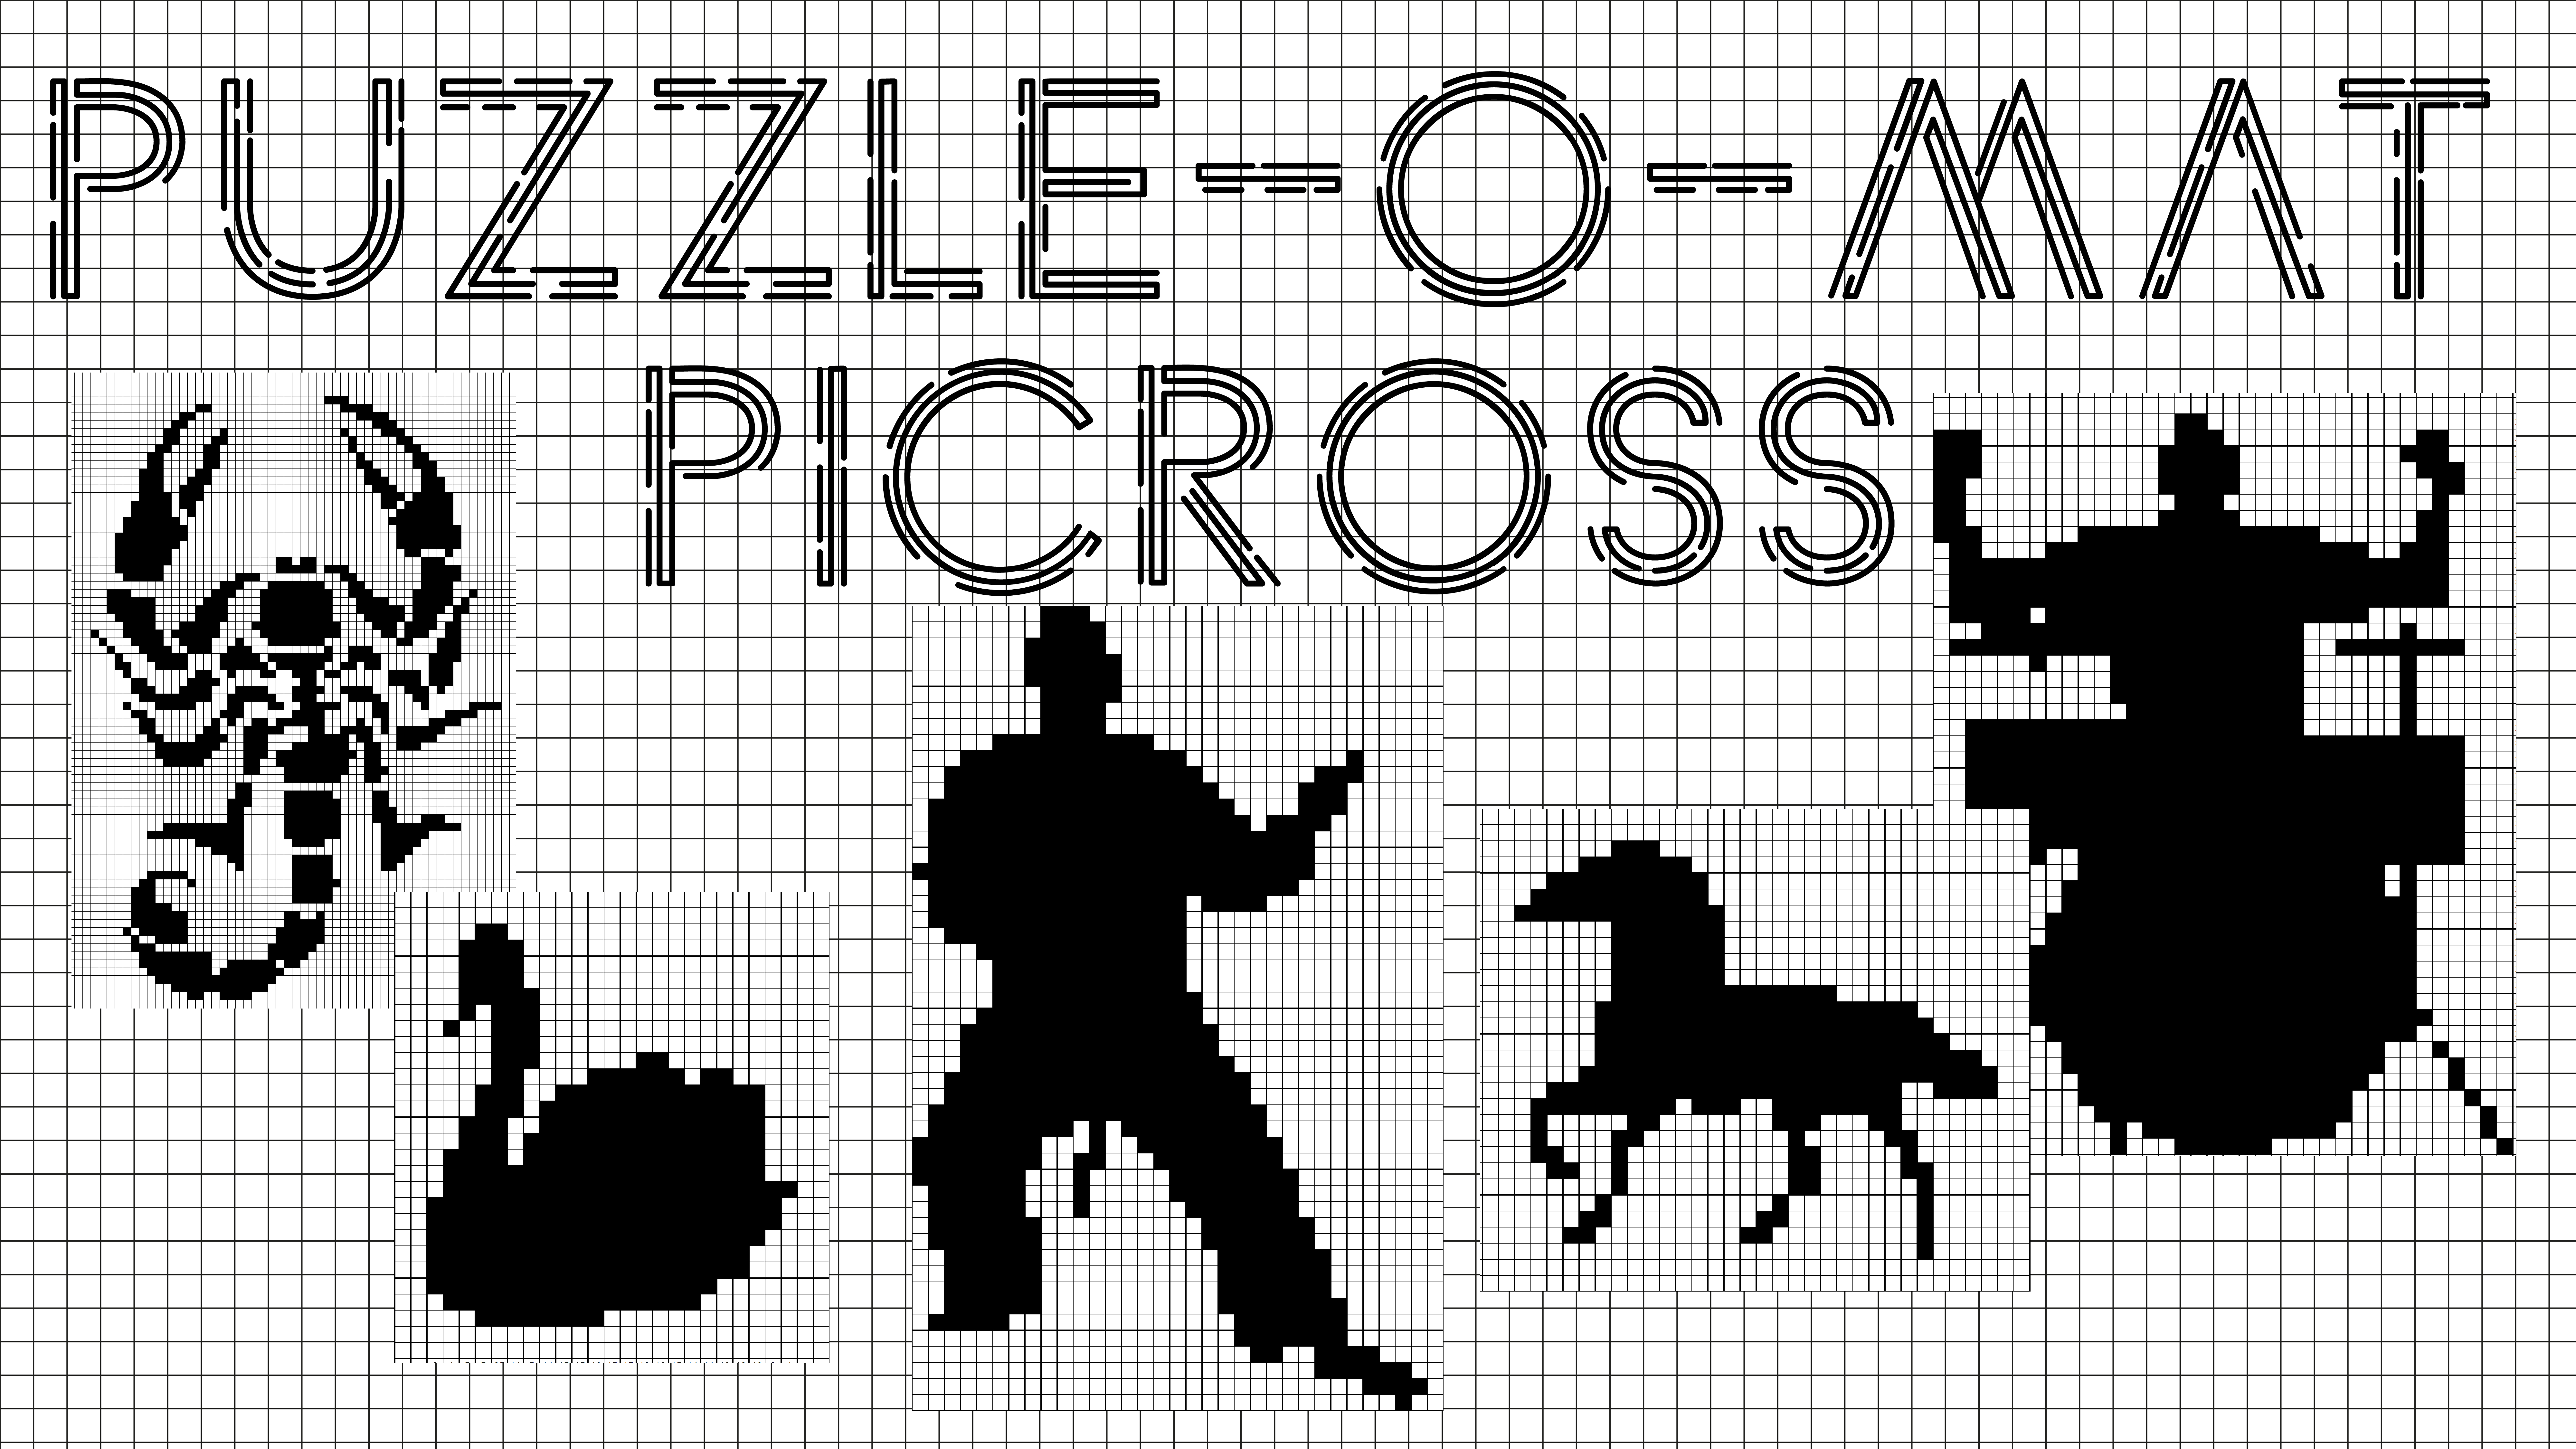 Puzzle Maker Nonogram Introduction | Designing For Print On Demand - Puzzle Print On Demand